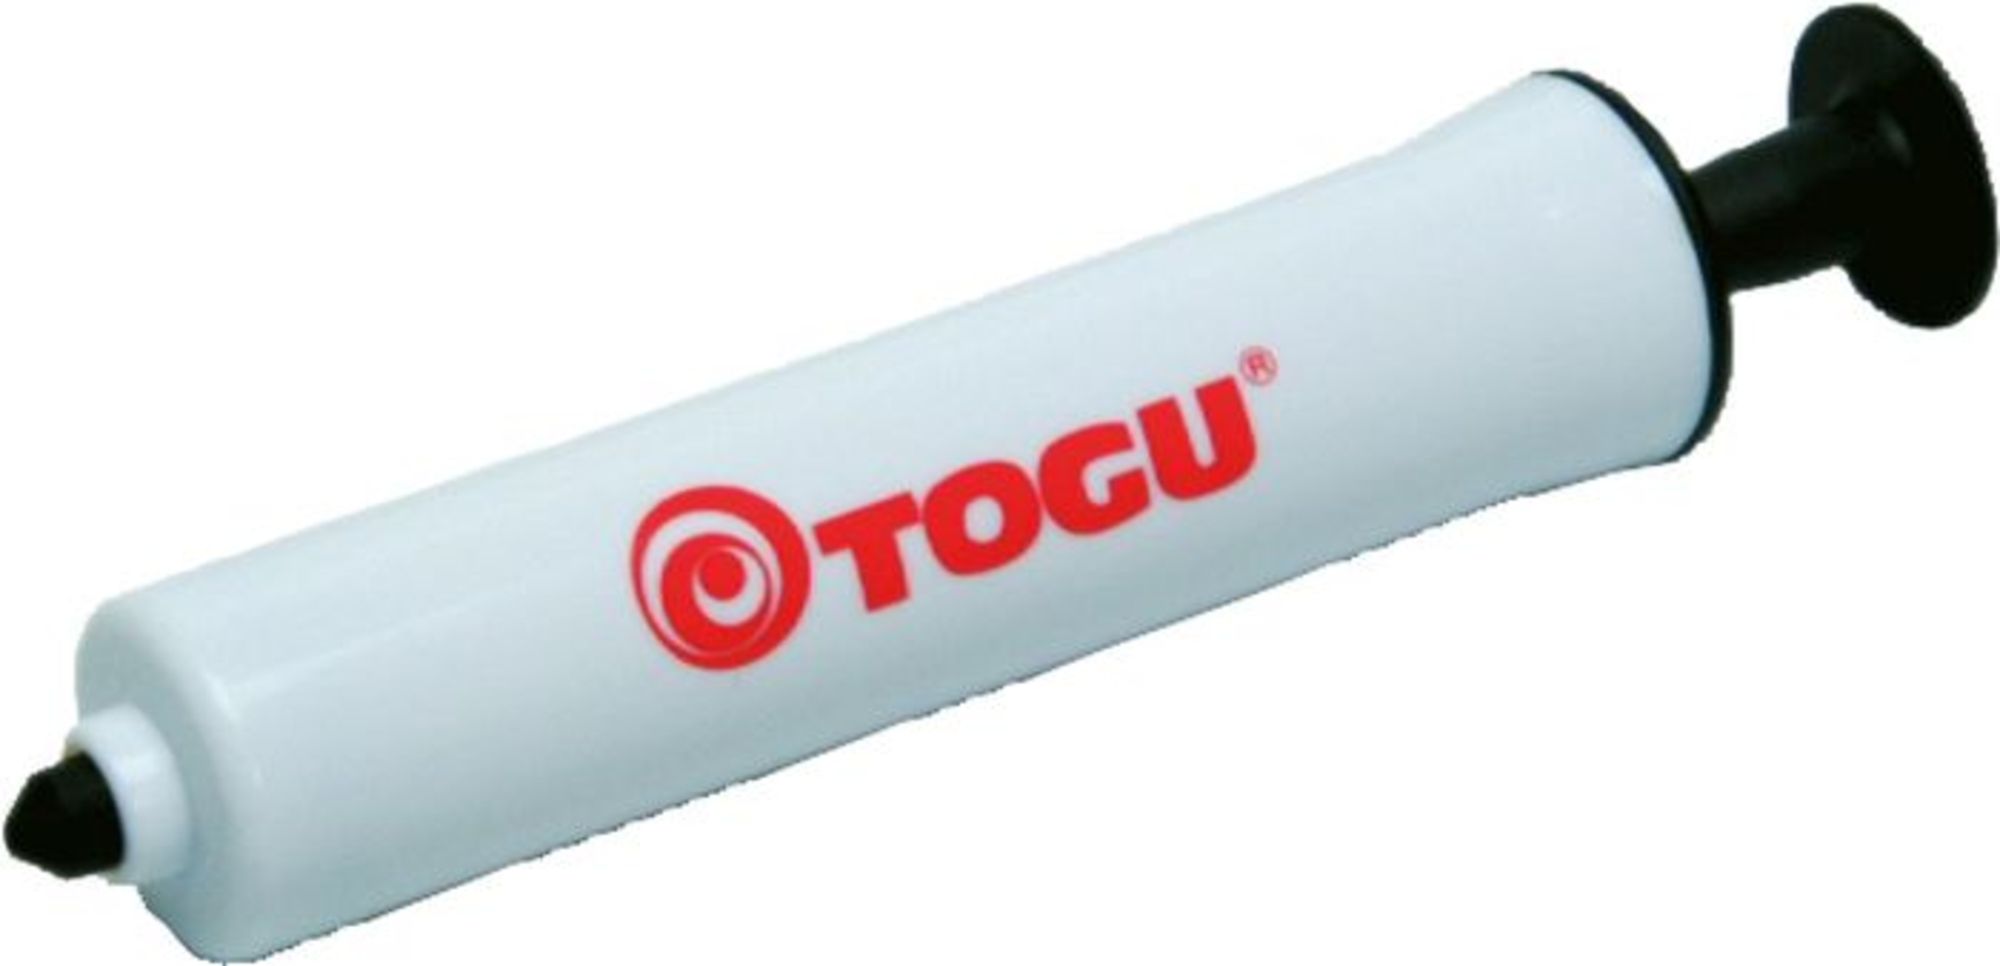 TOGU 904400 - Ballpumpe mit Nadelventil für Fußball, Basketball, Volleyball  etc.' kaufen - Spielwaren